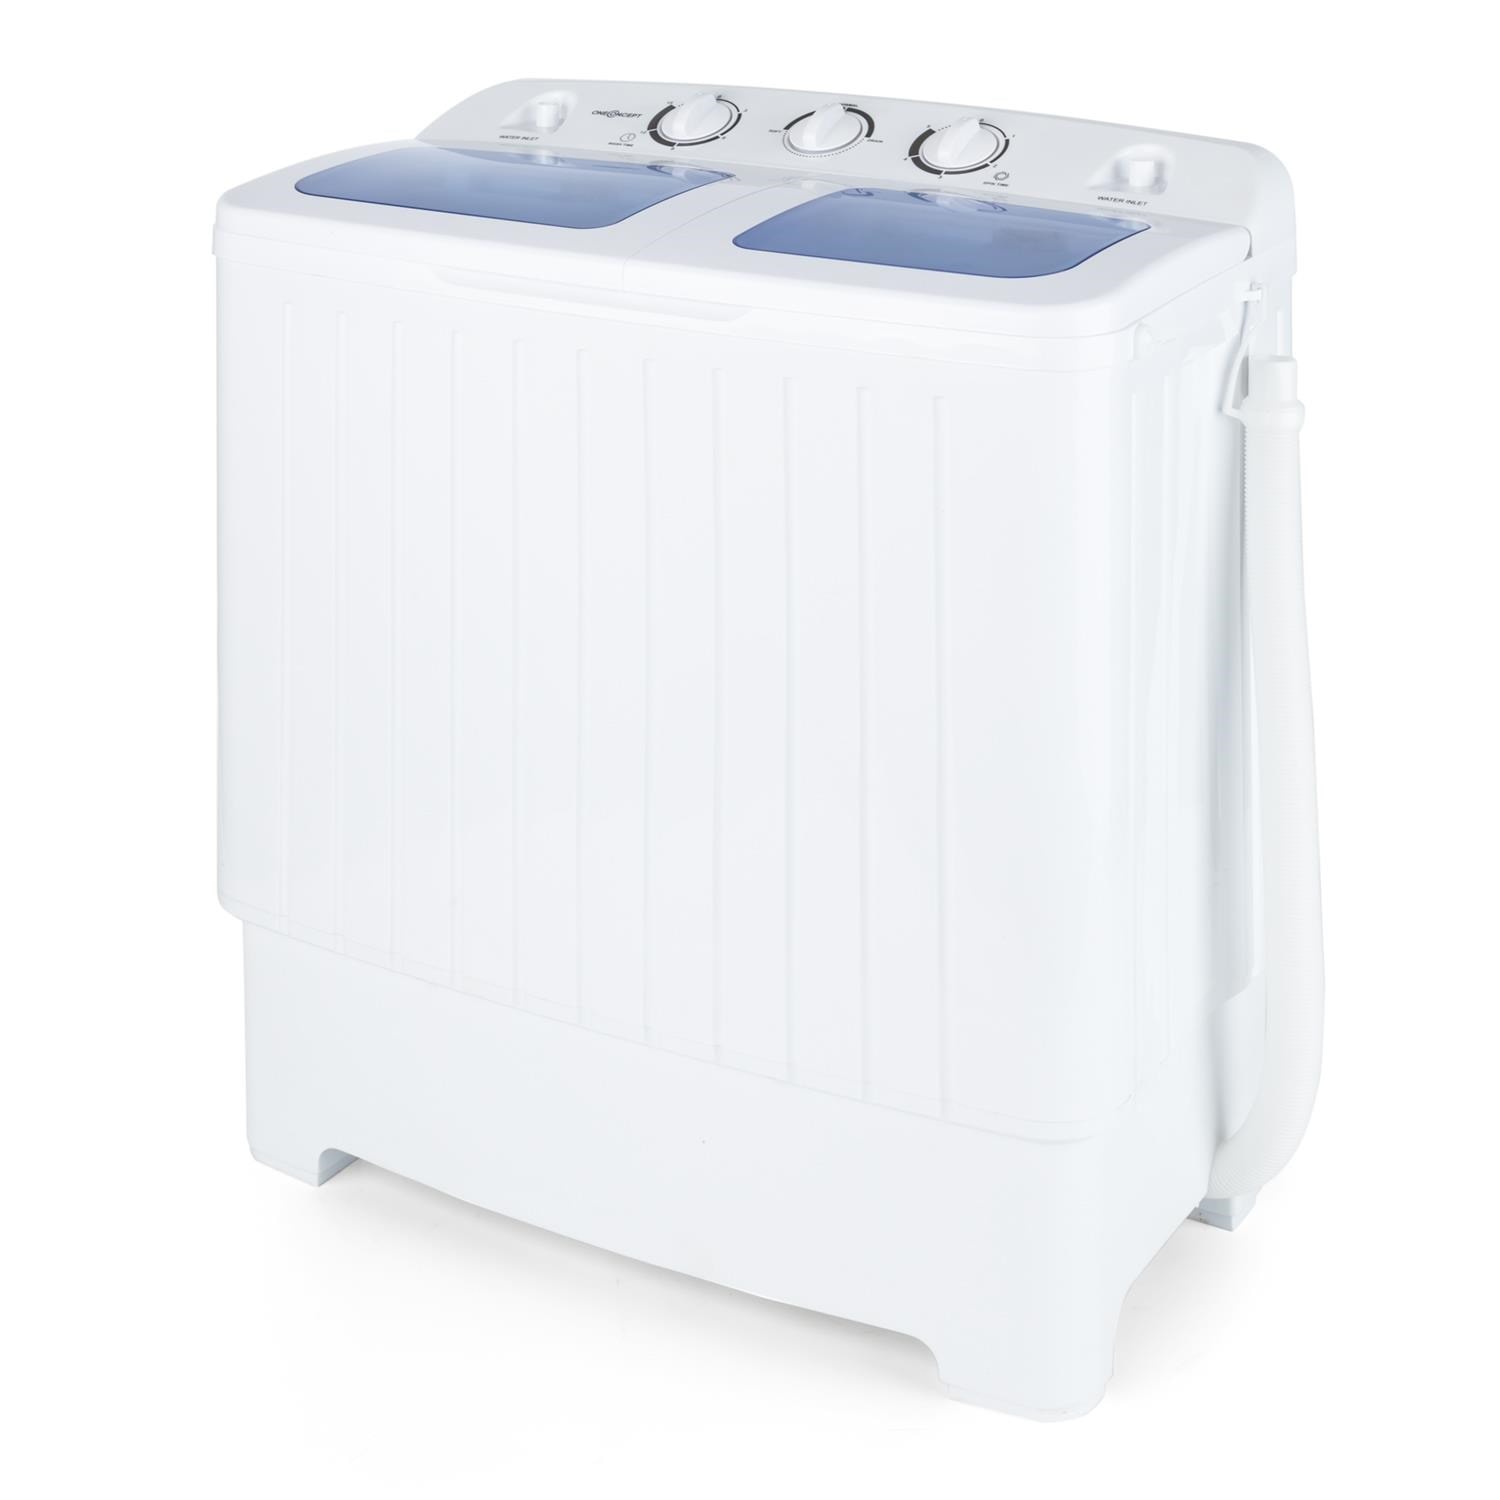 oneConcept Ecowash XL • Machine à laver • Mini lave-linge • avec essoreuse • Capacité de lavage de 4,2 kg • puissance de lavage 300 W • Capacité dessorage de 3 kg • Puissance dessorage 110 W • 